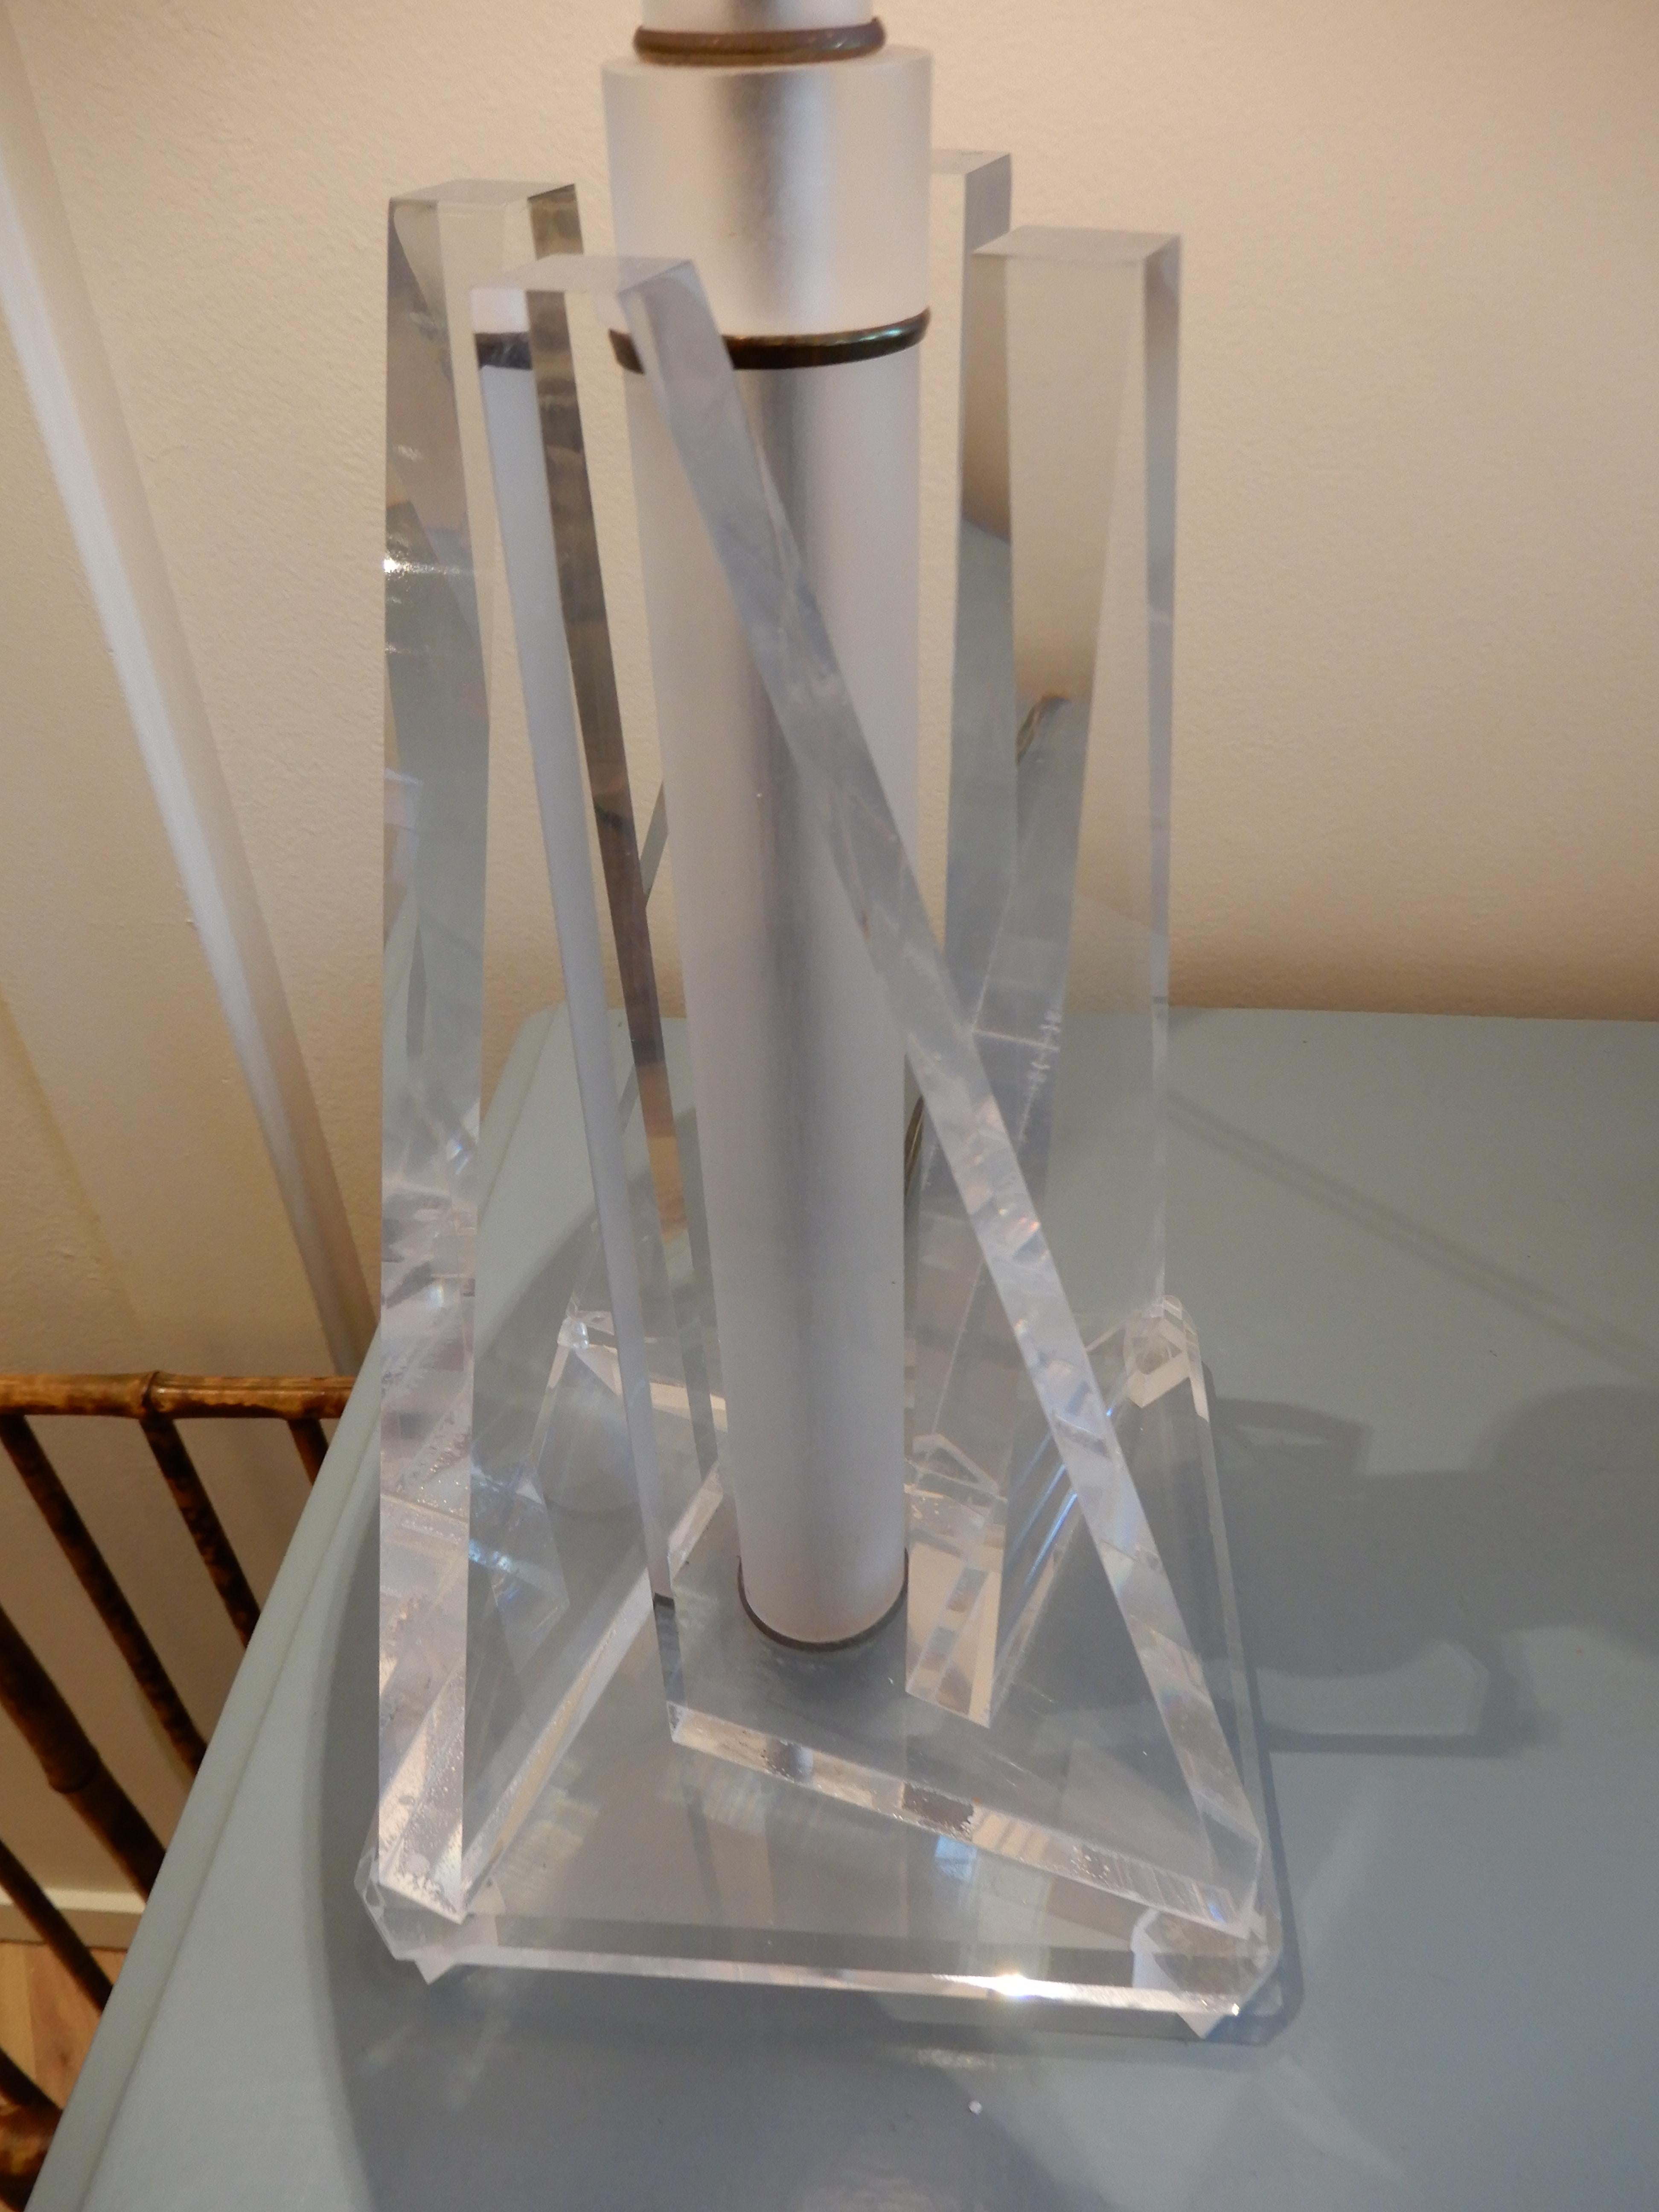 Paire de lampes de table en Lucite à découpe géométrique, datant du milieu du siècle dernier. Les lampes mesurent 17 pouces à la douille et 25 pouces de la base au sommet de l'abat-jour. La tige centrale est également construite en Lucite opaque